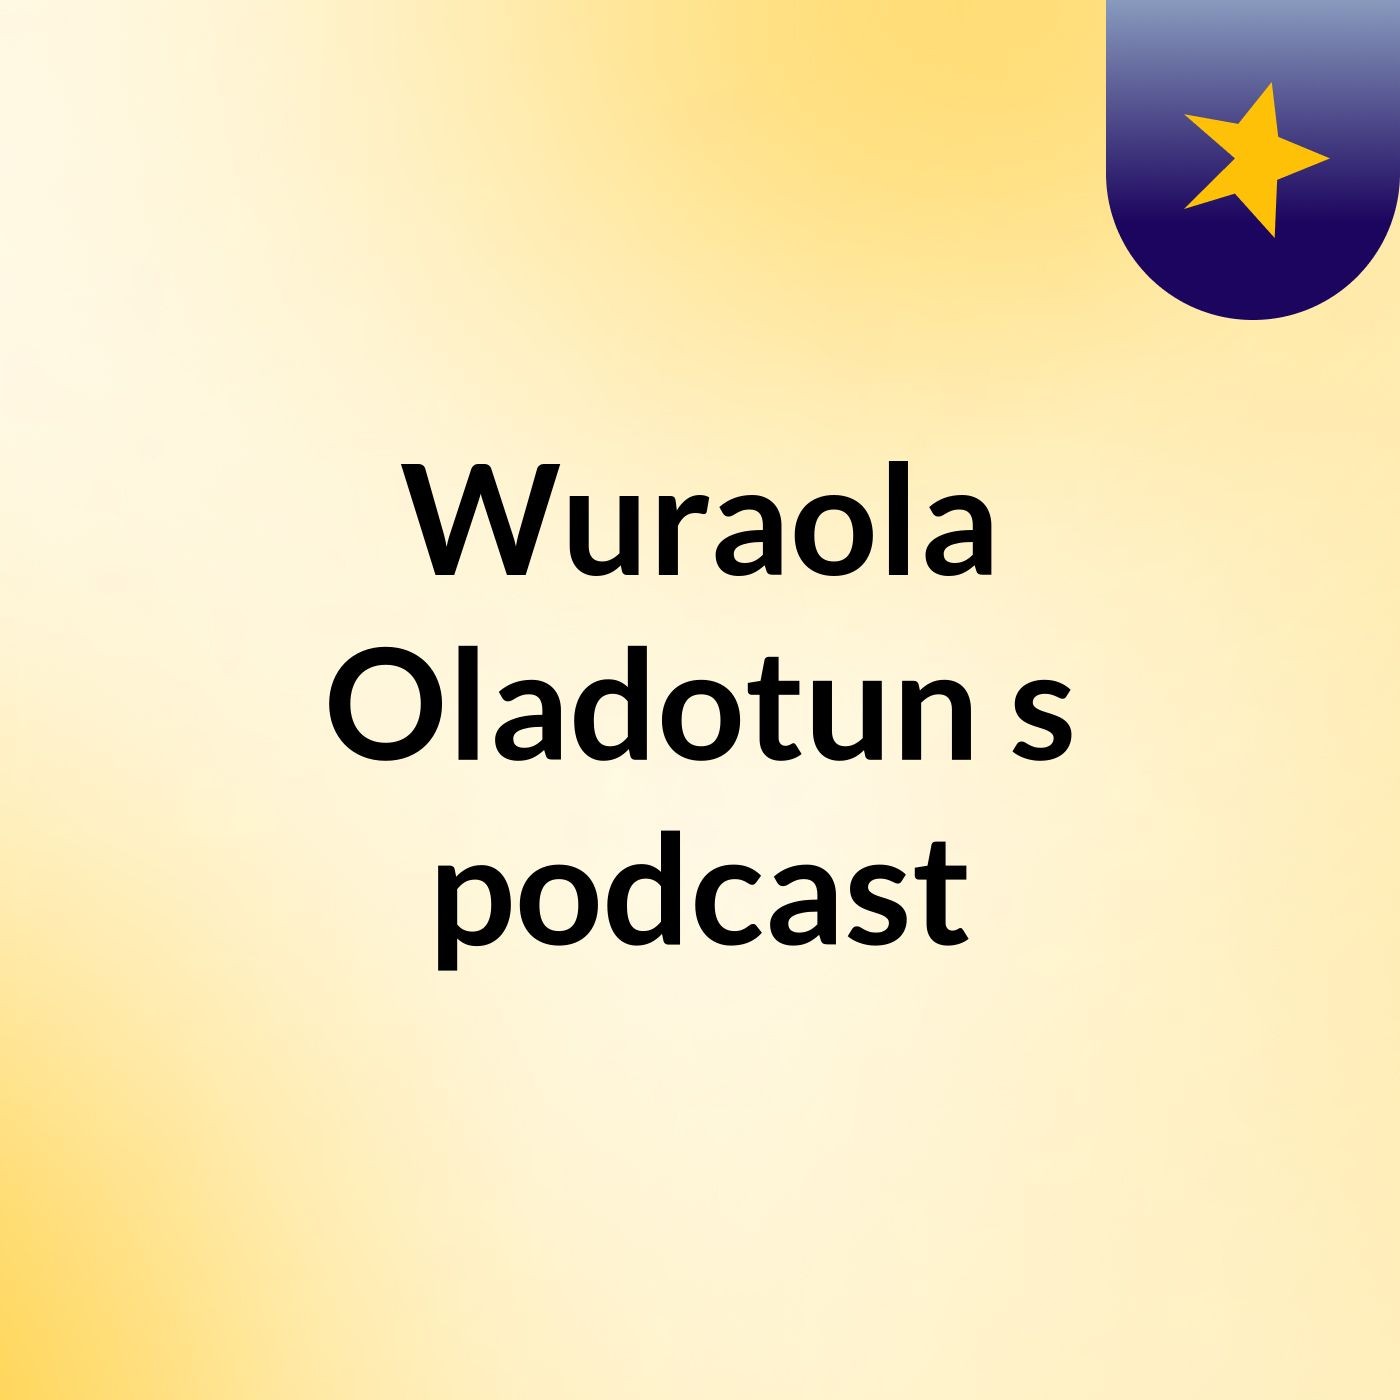 Practise 2Episode 2 - Wuraola Oladotun's podcast